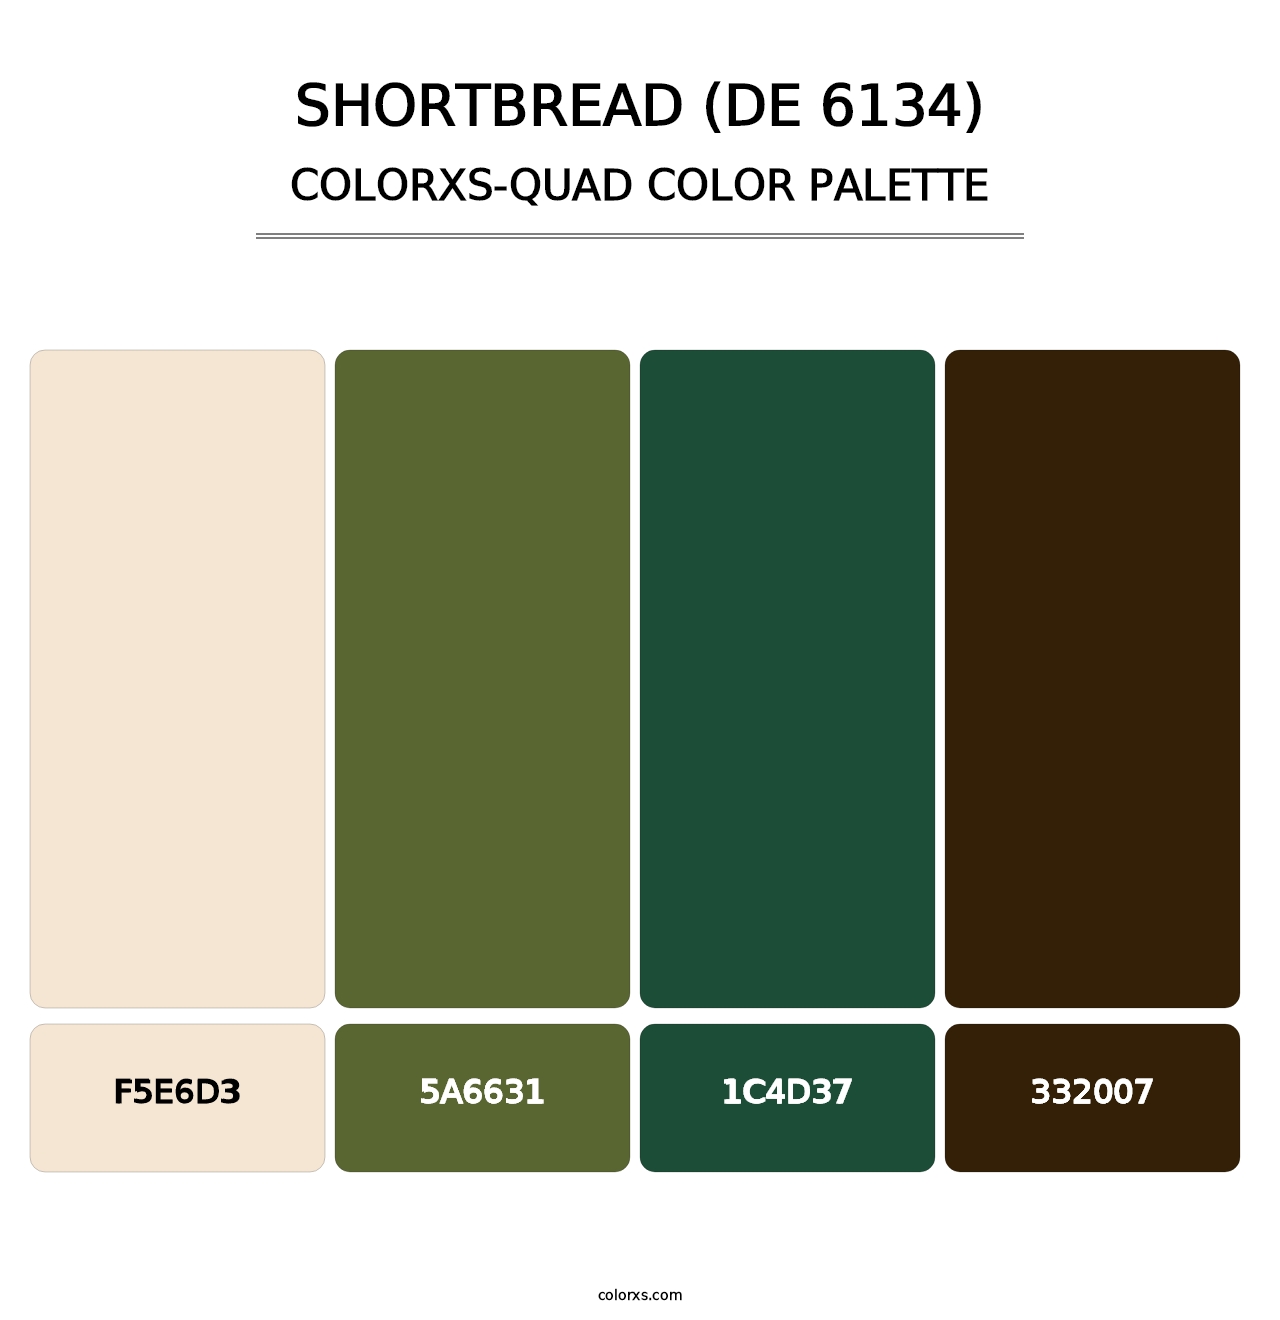 Shortbread (DE 6134) - Colorxs Quad Palette